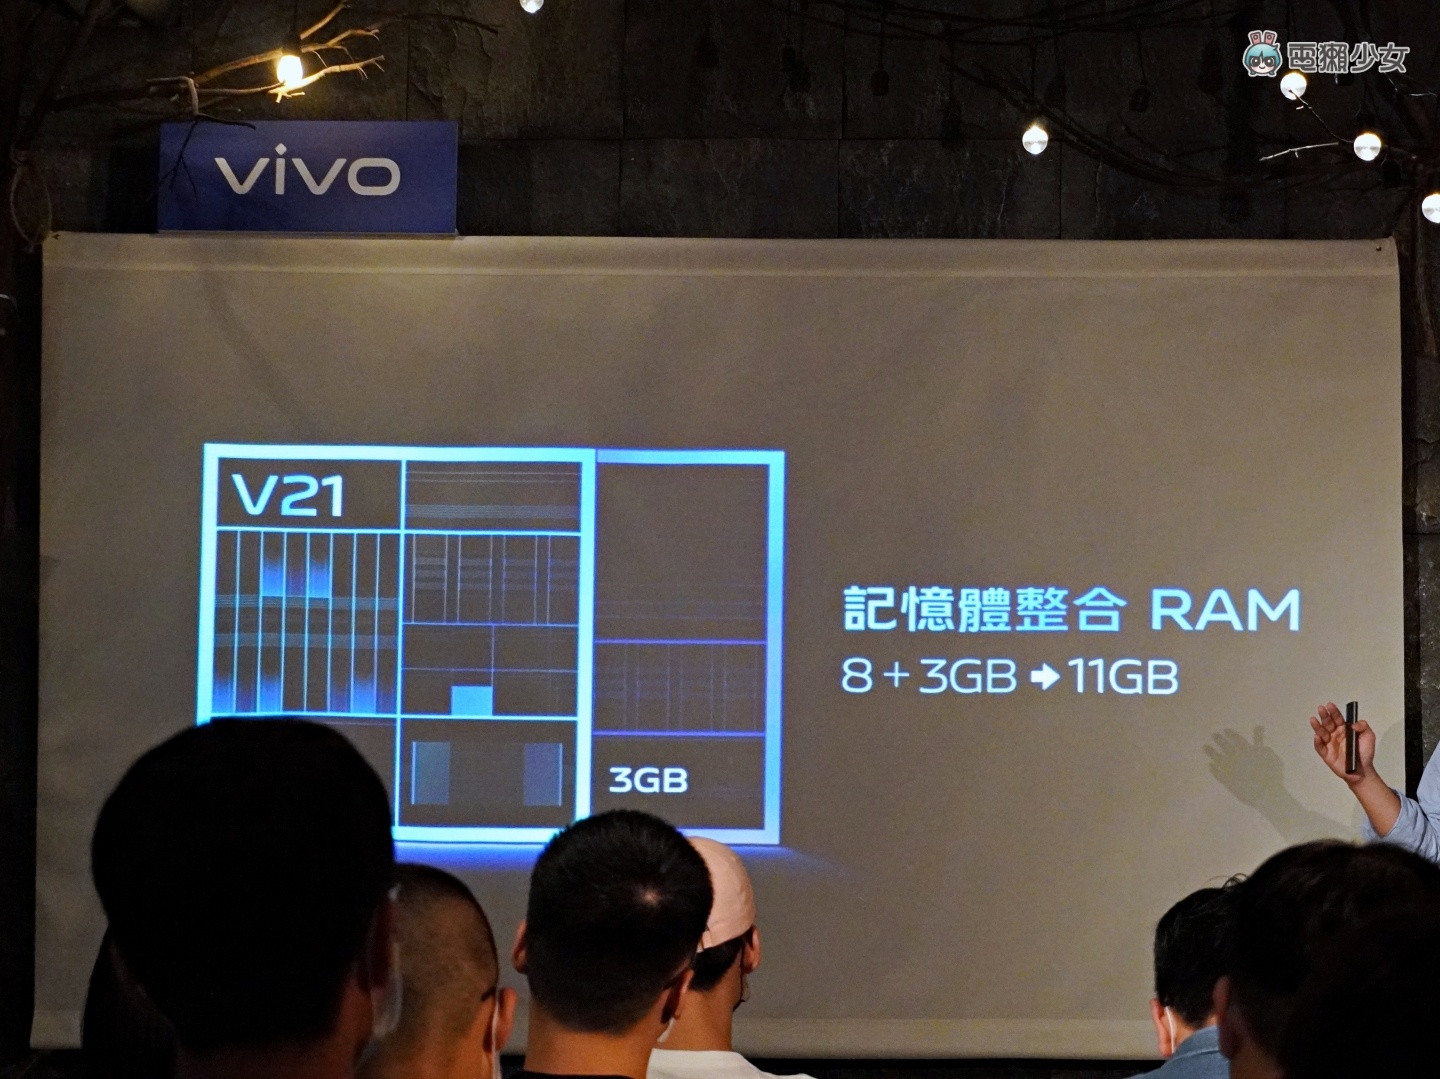 出門｜前後鏡頭都有 OIS 防手震！『 vivo V21 5G 』輕薄美型自拍旗艦正式登台 售價 NT$13,990